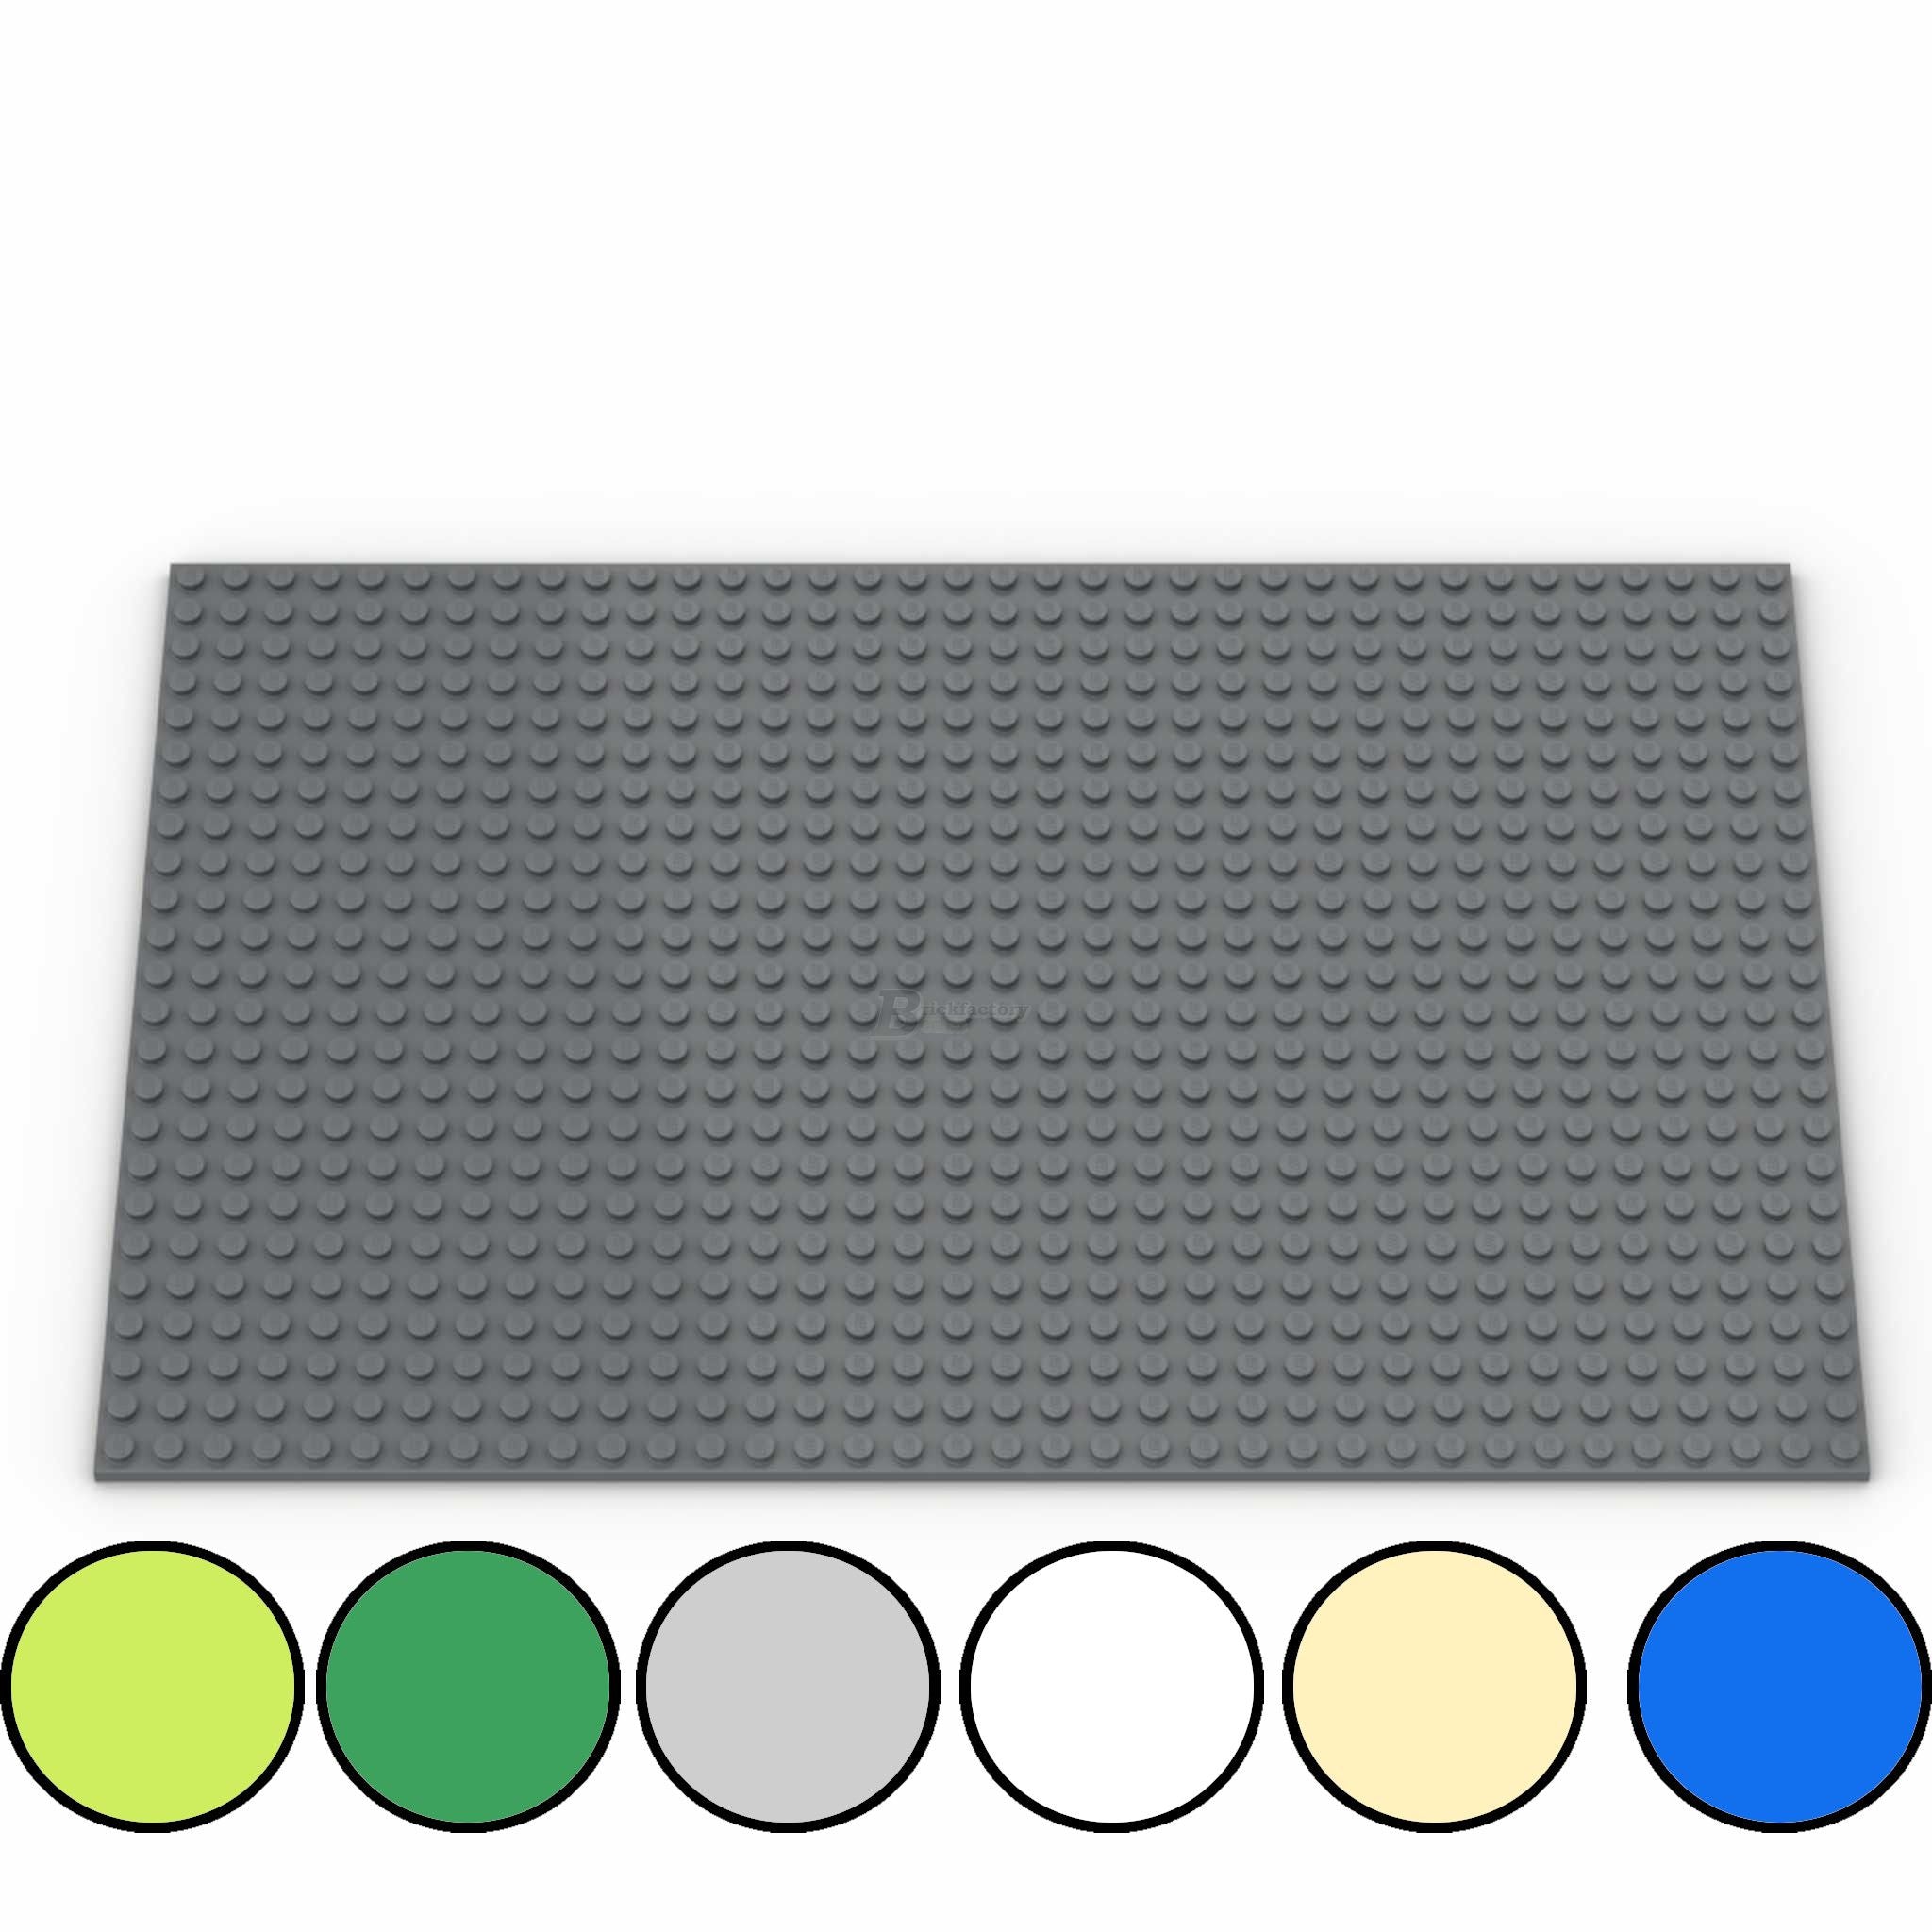 8809 - Grundplatte 24x36 Noppen, verschiedene Farben